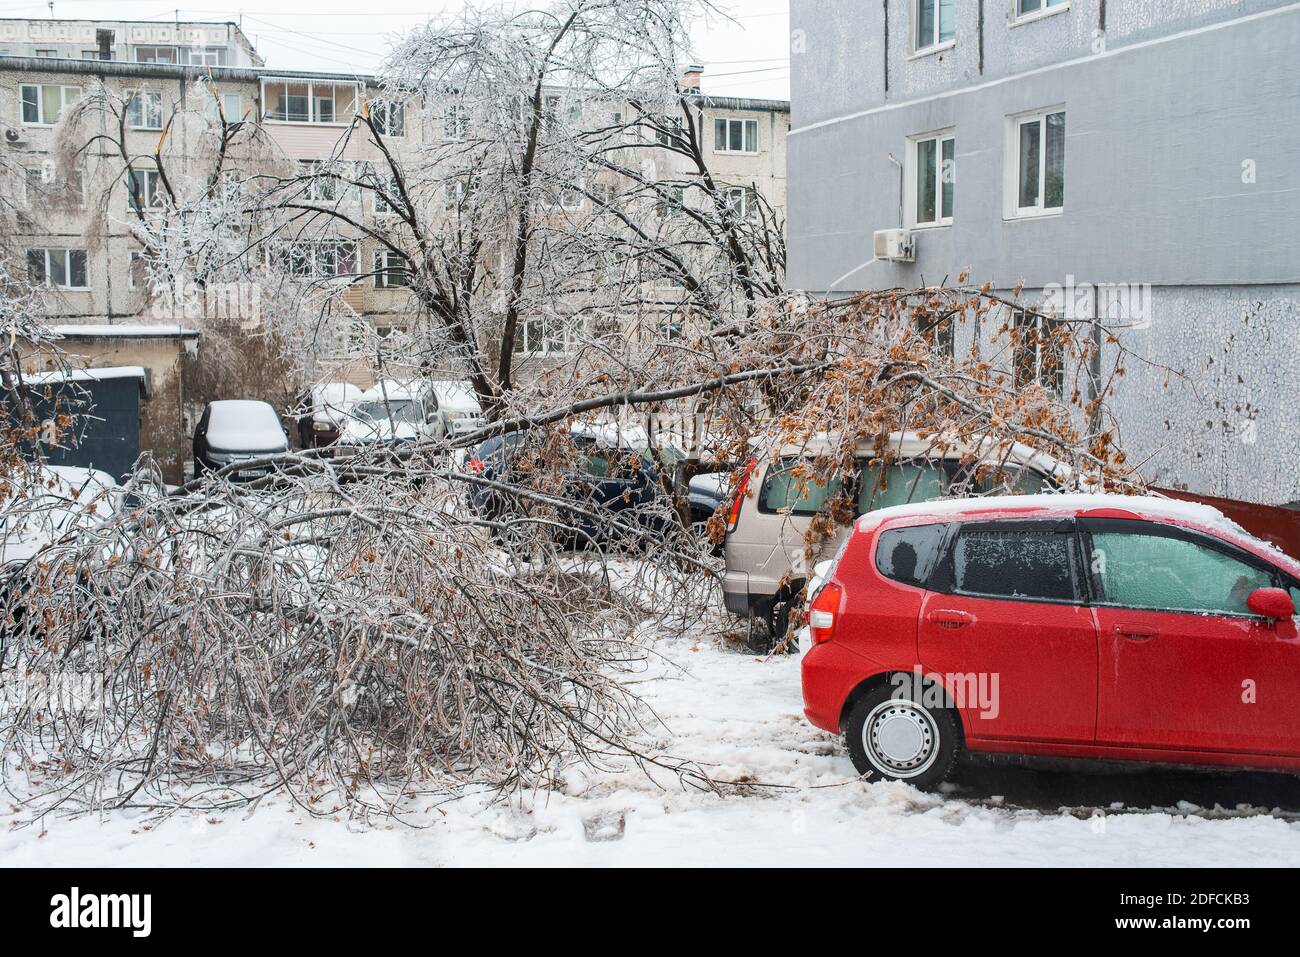 Bäume mit Eis bedeckt, die über Autos gebeugt sind. Vom Wind zerbrochene Äste von Bäumen fielen auf die Autos. Stadt im Winter. Eissturmzyklon. Stockfoto